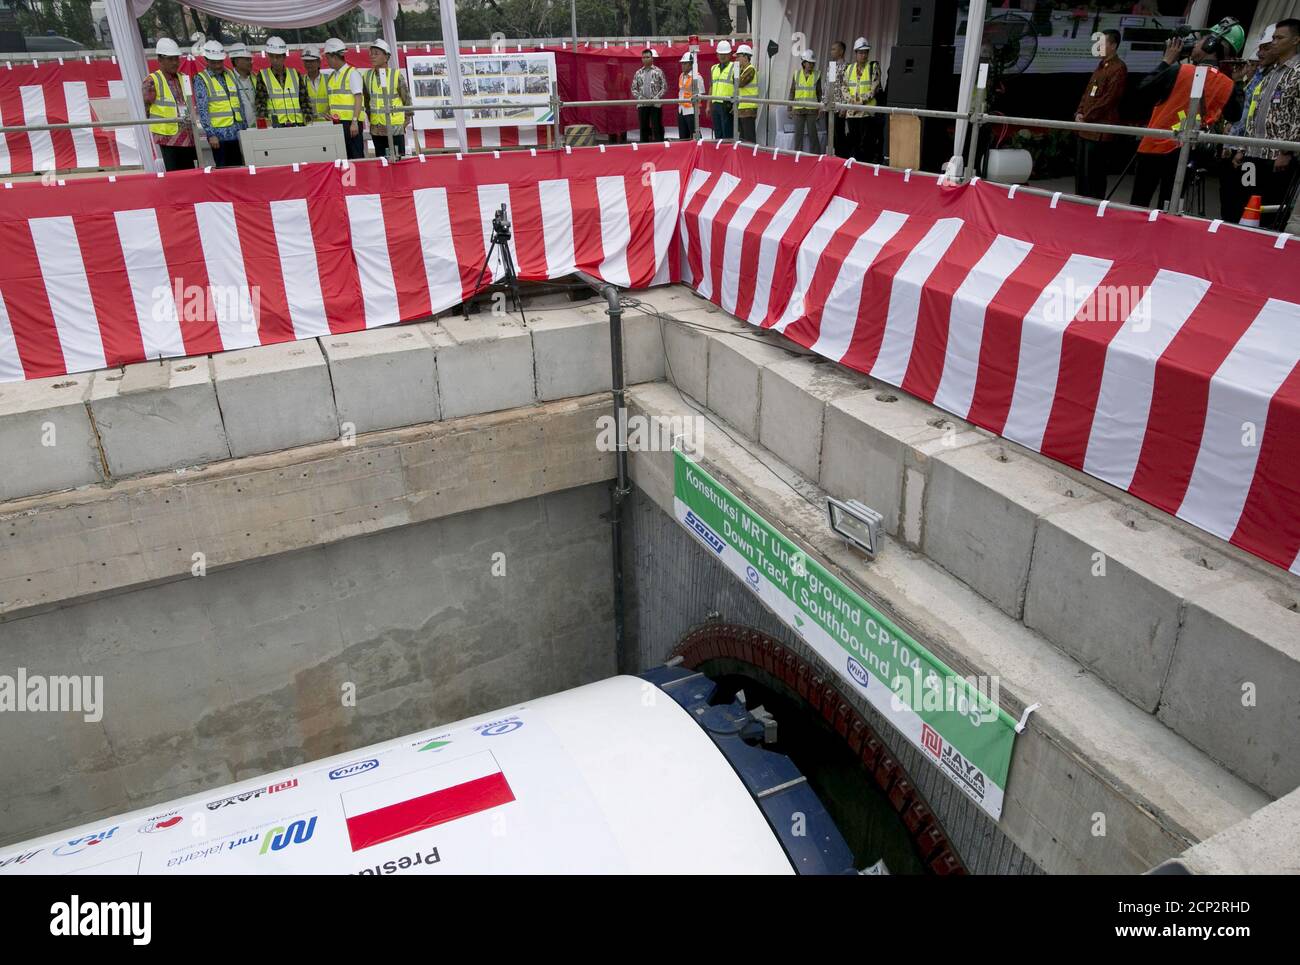 El presidente de Indonesia, Joko Widodo (4th L), empuja una palanca de control hacia adelante para iniciar una máquina de perforación de túneles (abajo) durante una ceremonia en una futura estación para el sistema de tránsito rápido masivo (MRT) en Yakarta, Indonesia, el 21 de septiembre de 2015. El gasto en infraestructura en Indonesia está empezando a repuntar después de largos retrasos, un alivio bienvenido para el plan de Widodo de impulsar la economía más grande del sudeste asiático mediante la construcción de nuevas carreteras, puertos y puentes. REUTERS/Darren Whiteside Foto de stock